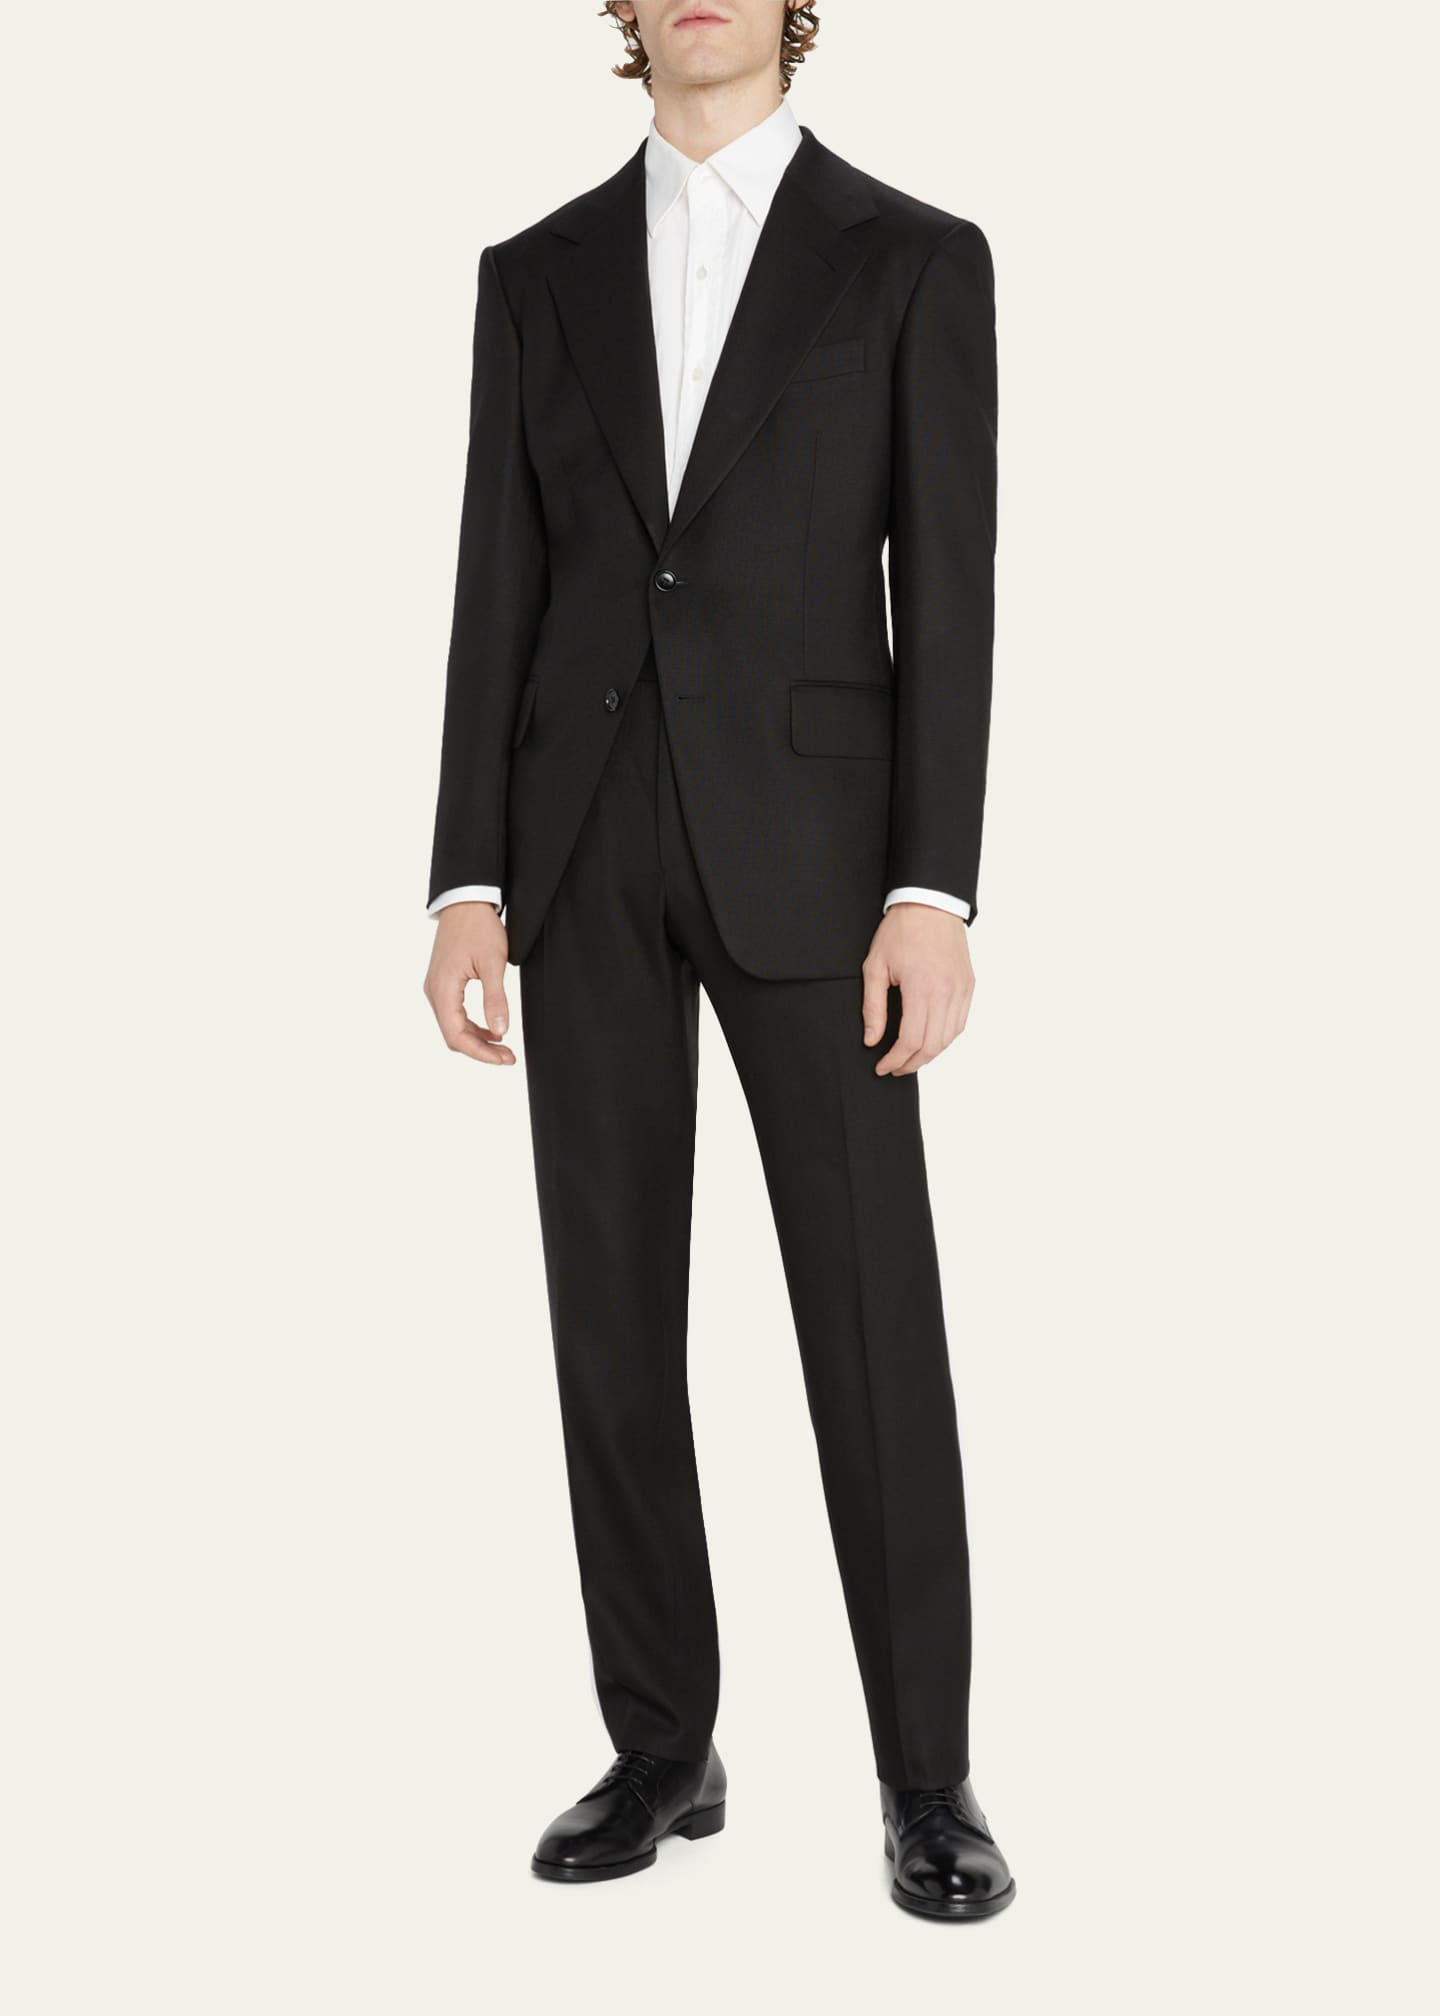 TOM FORD Men's Cooper Solid Hopsack Suit - Bergdorf Goodman